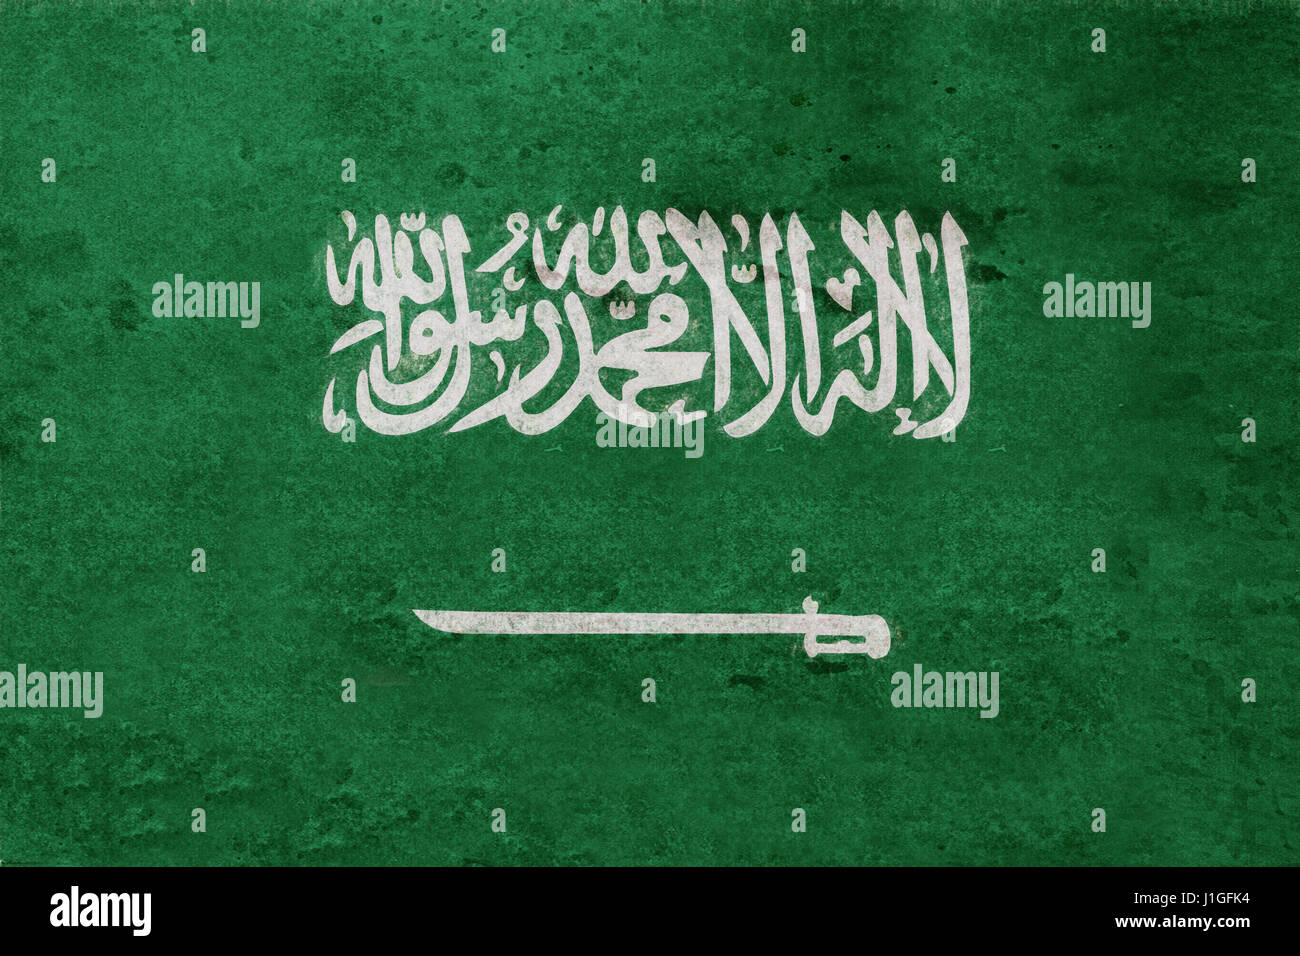 Abbildung der Flagge von Saudi-Arabien mit einem Grunge-Look. Stockfoto